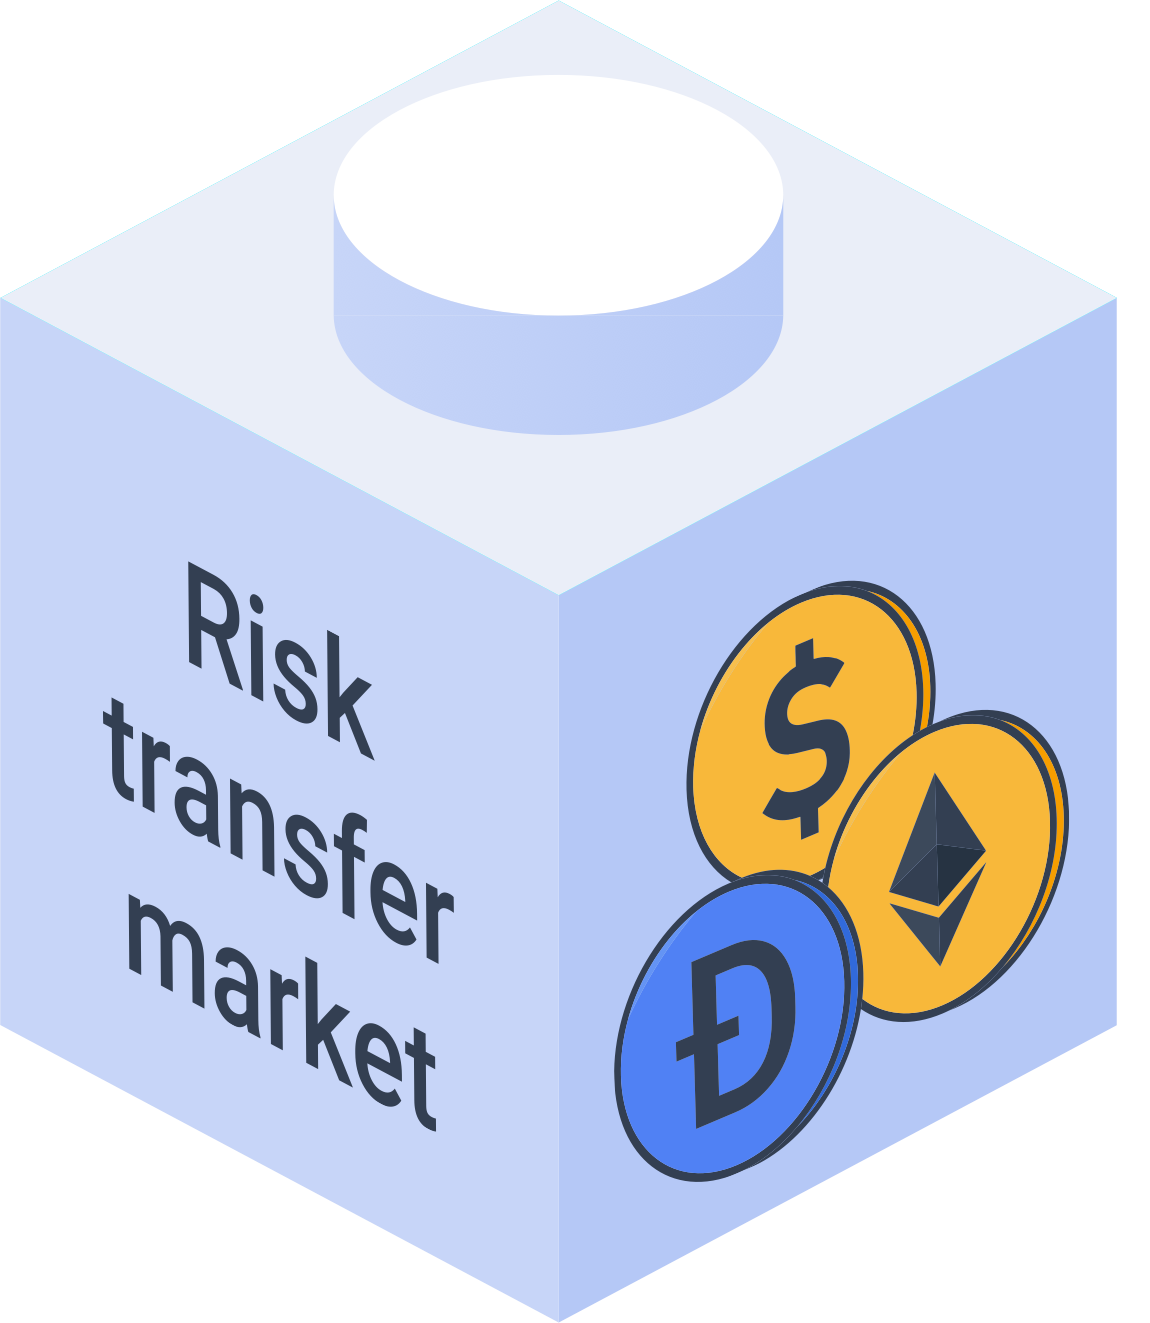 Risk Transfer Market